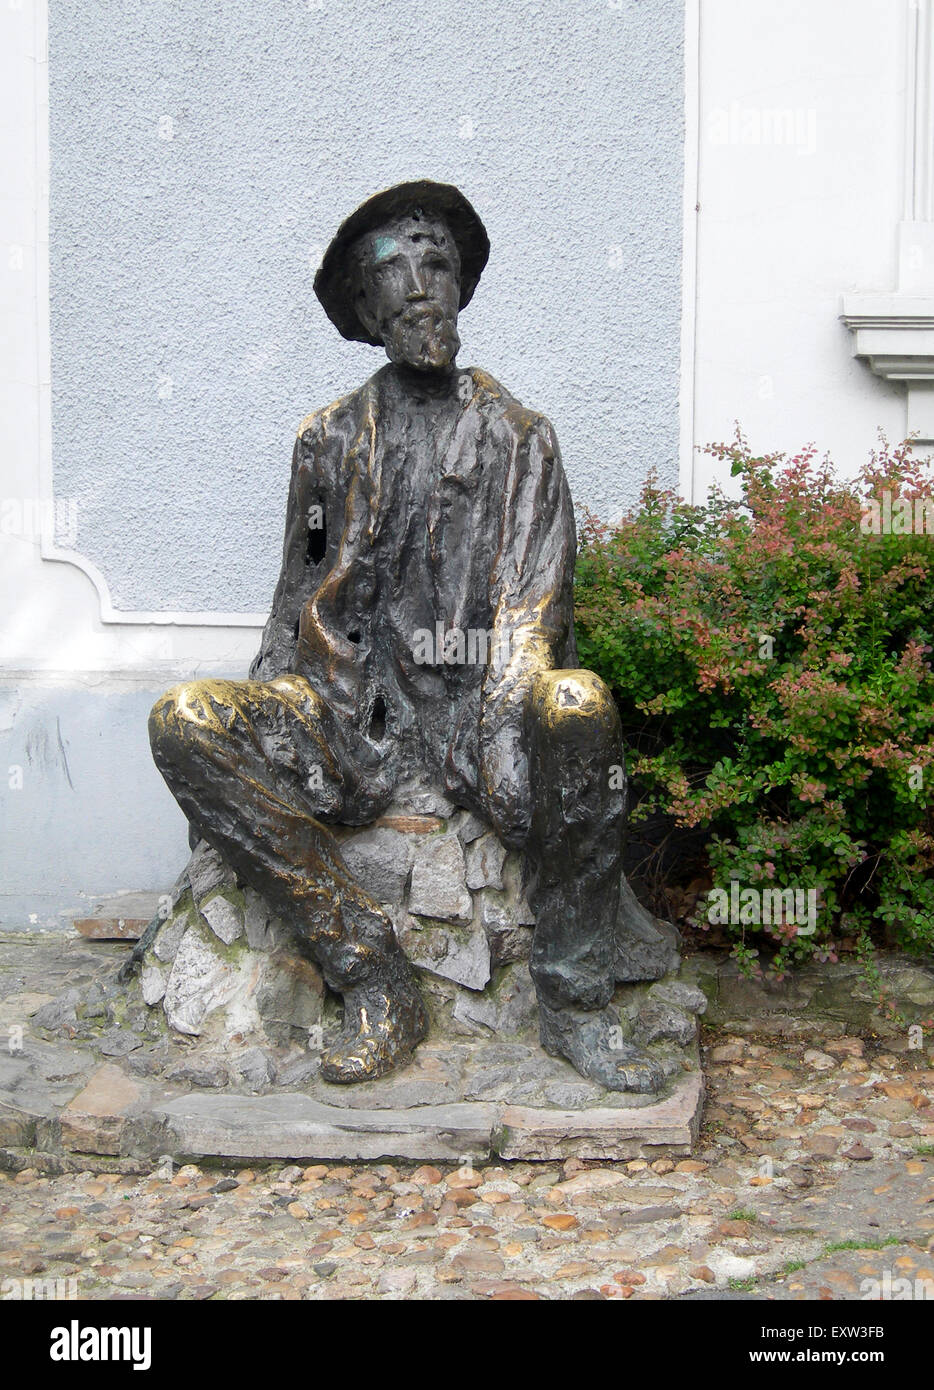 Statue von Dura Jakšic berühmten serbischen Dichter, Maler und Schriftsteller im Künstlerviertel Skadarlija Belgrad Serbien Europas Stockfoto